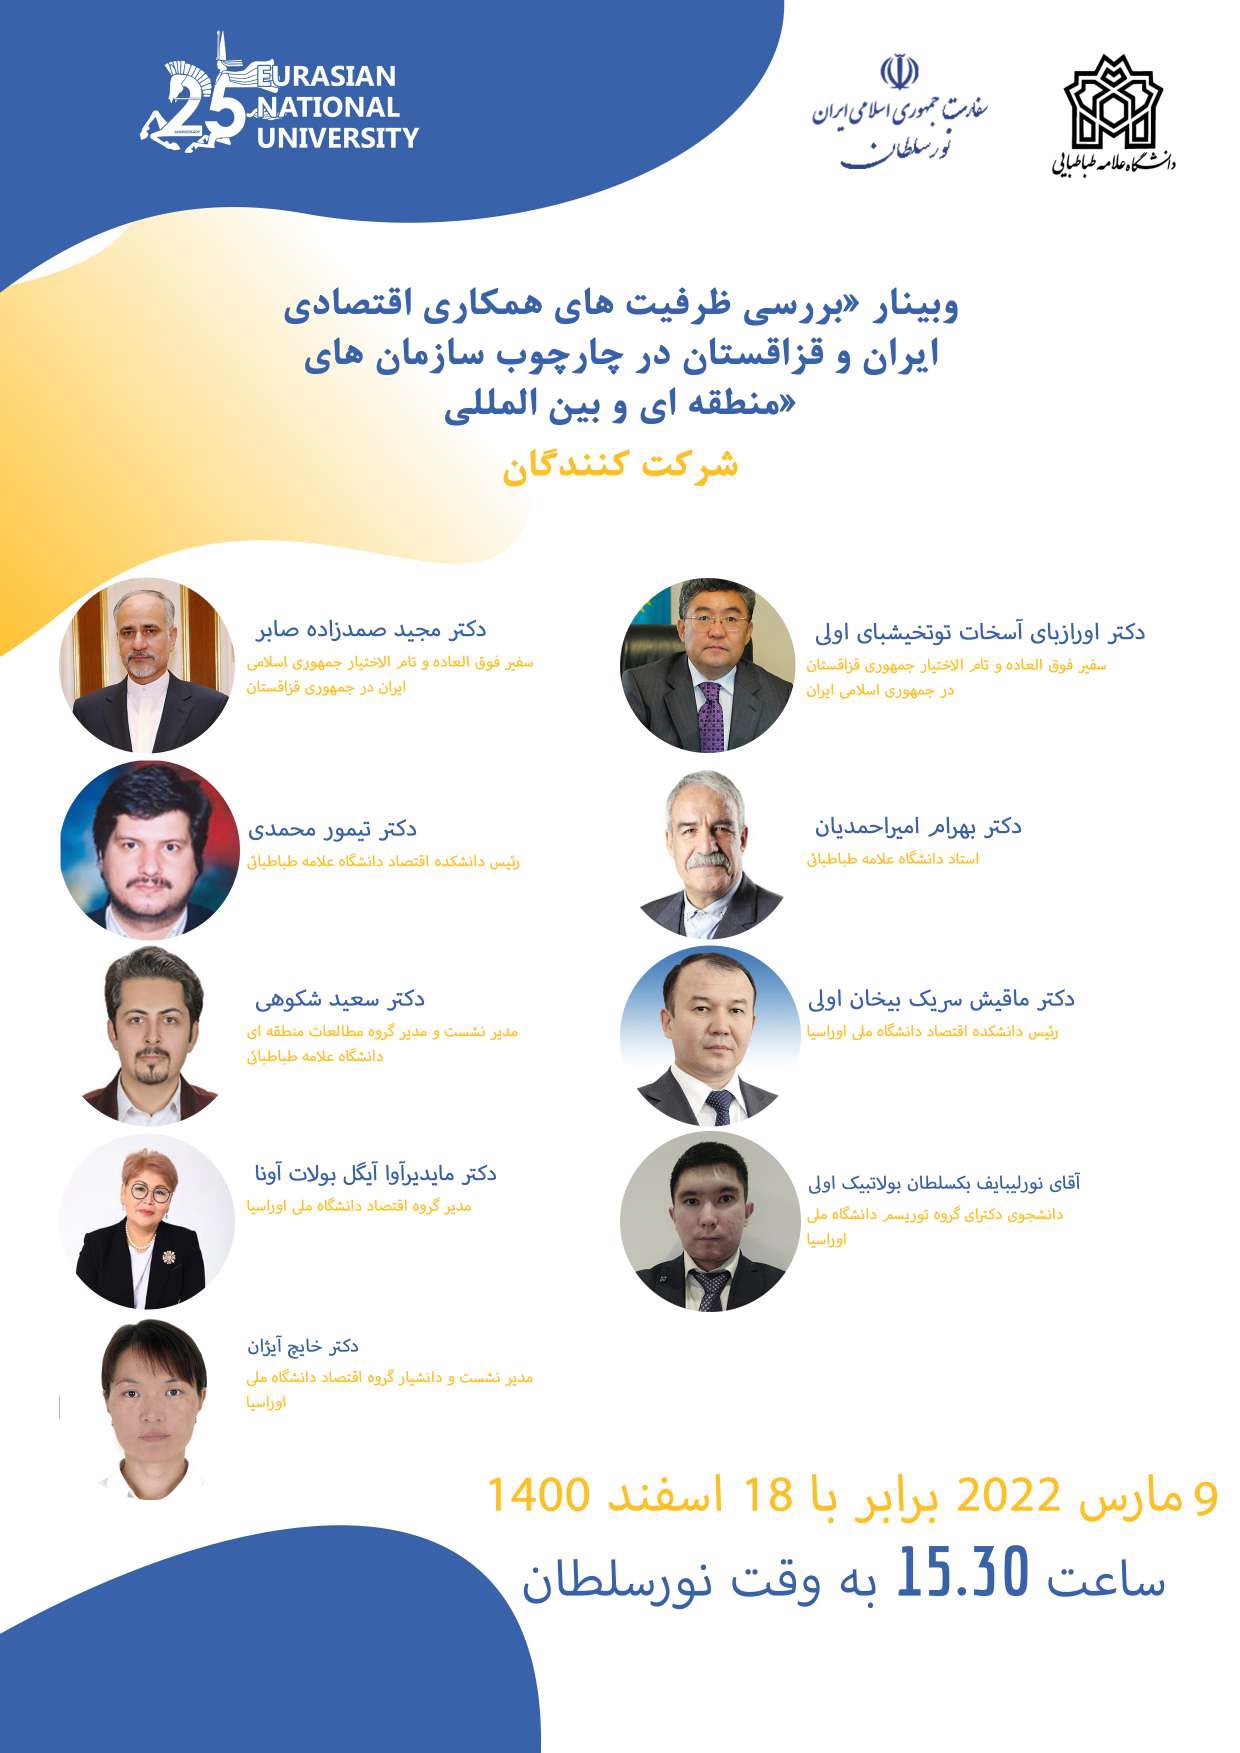 برگزاری چهار برنامه بین المللی با حضور استادانی از دانشگاه های قزاقستان، افغانستان و مکزیک